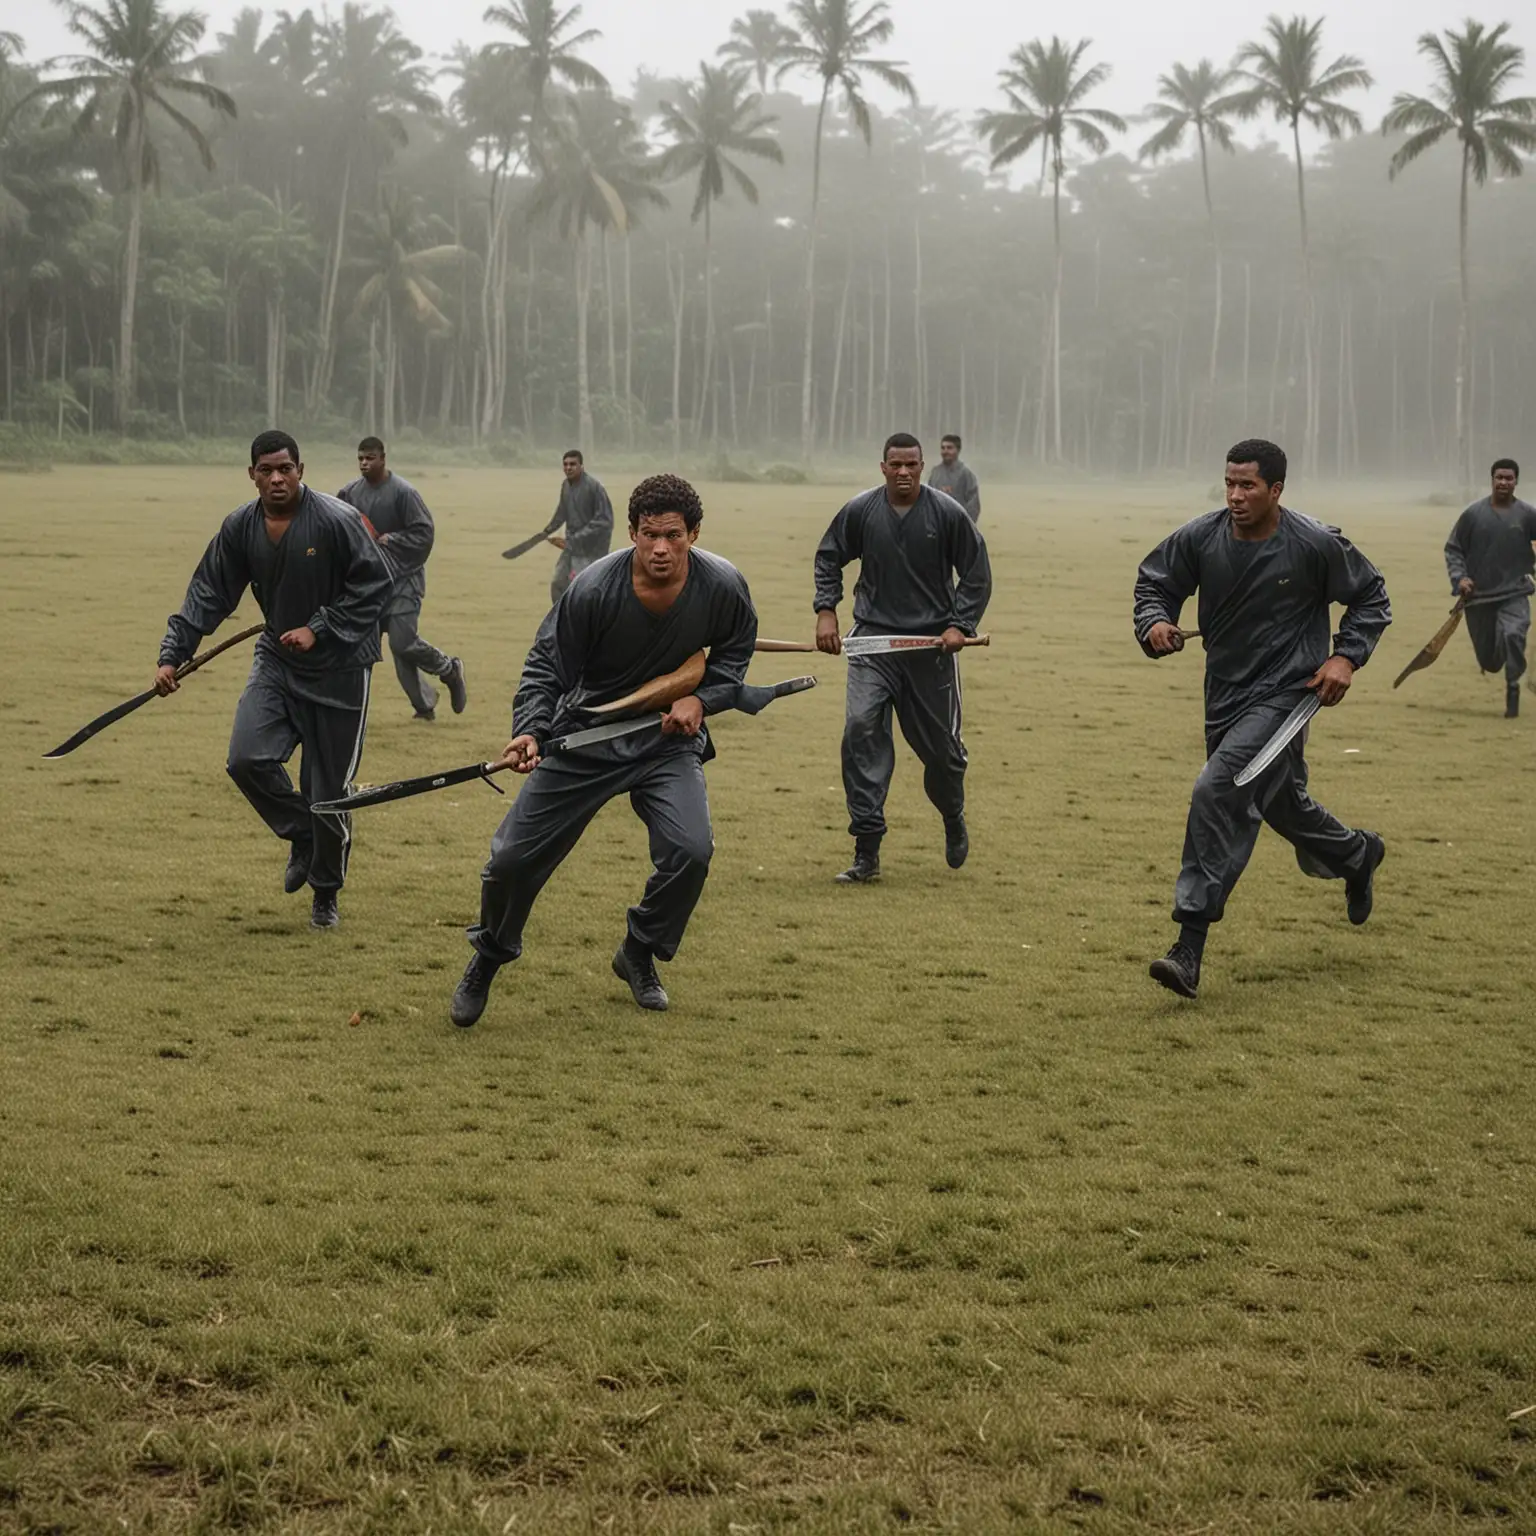 Dans un environnement de terrain de foot tropical glauque. 
6 hommes en jogging avec des machettes à la main courses une autre personne 